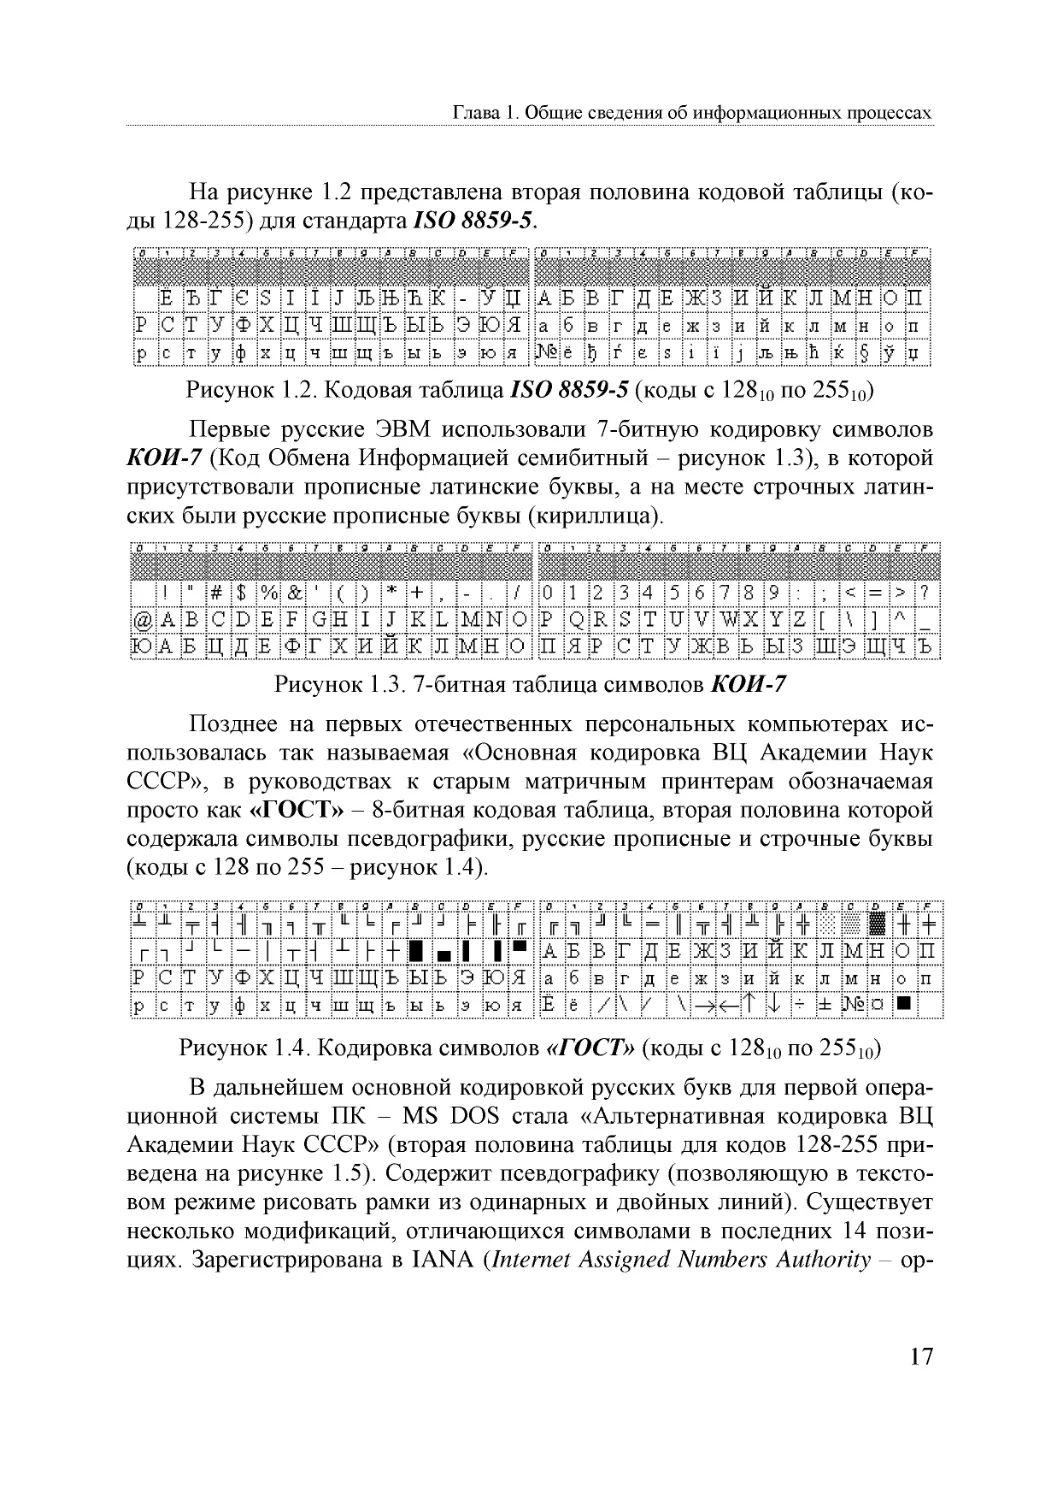 Informatika_Uchebnik_dlya_vuzov_2010 17